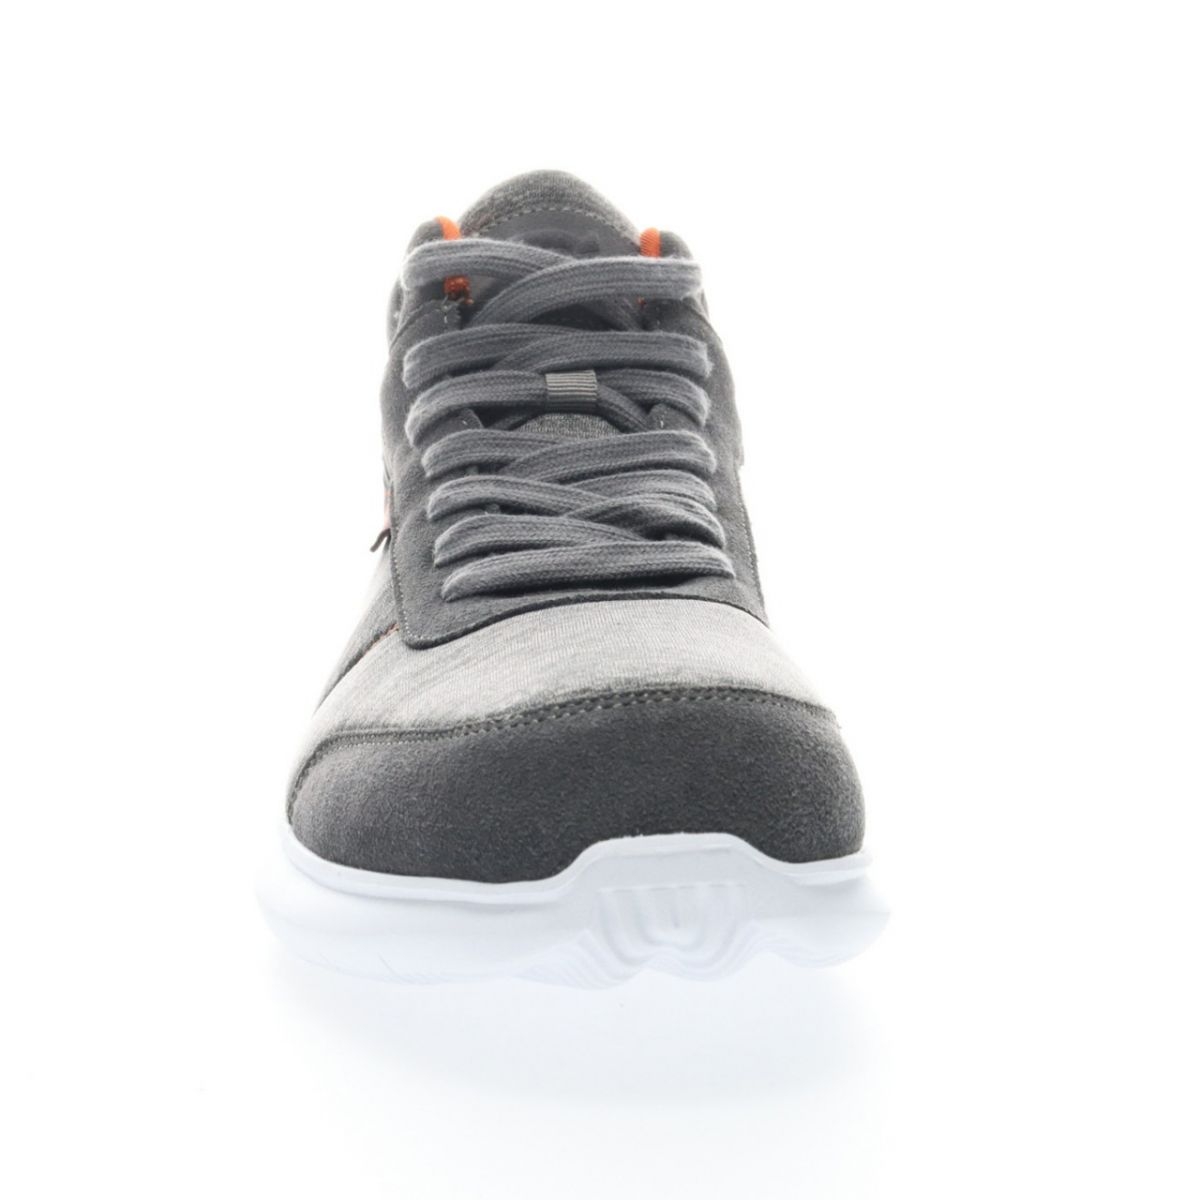 Propet Men's Viator Hi Sneaker Grey/Orange - MAA112MGOR Grey/orange - Grey/orange, 14 XX-Wide